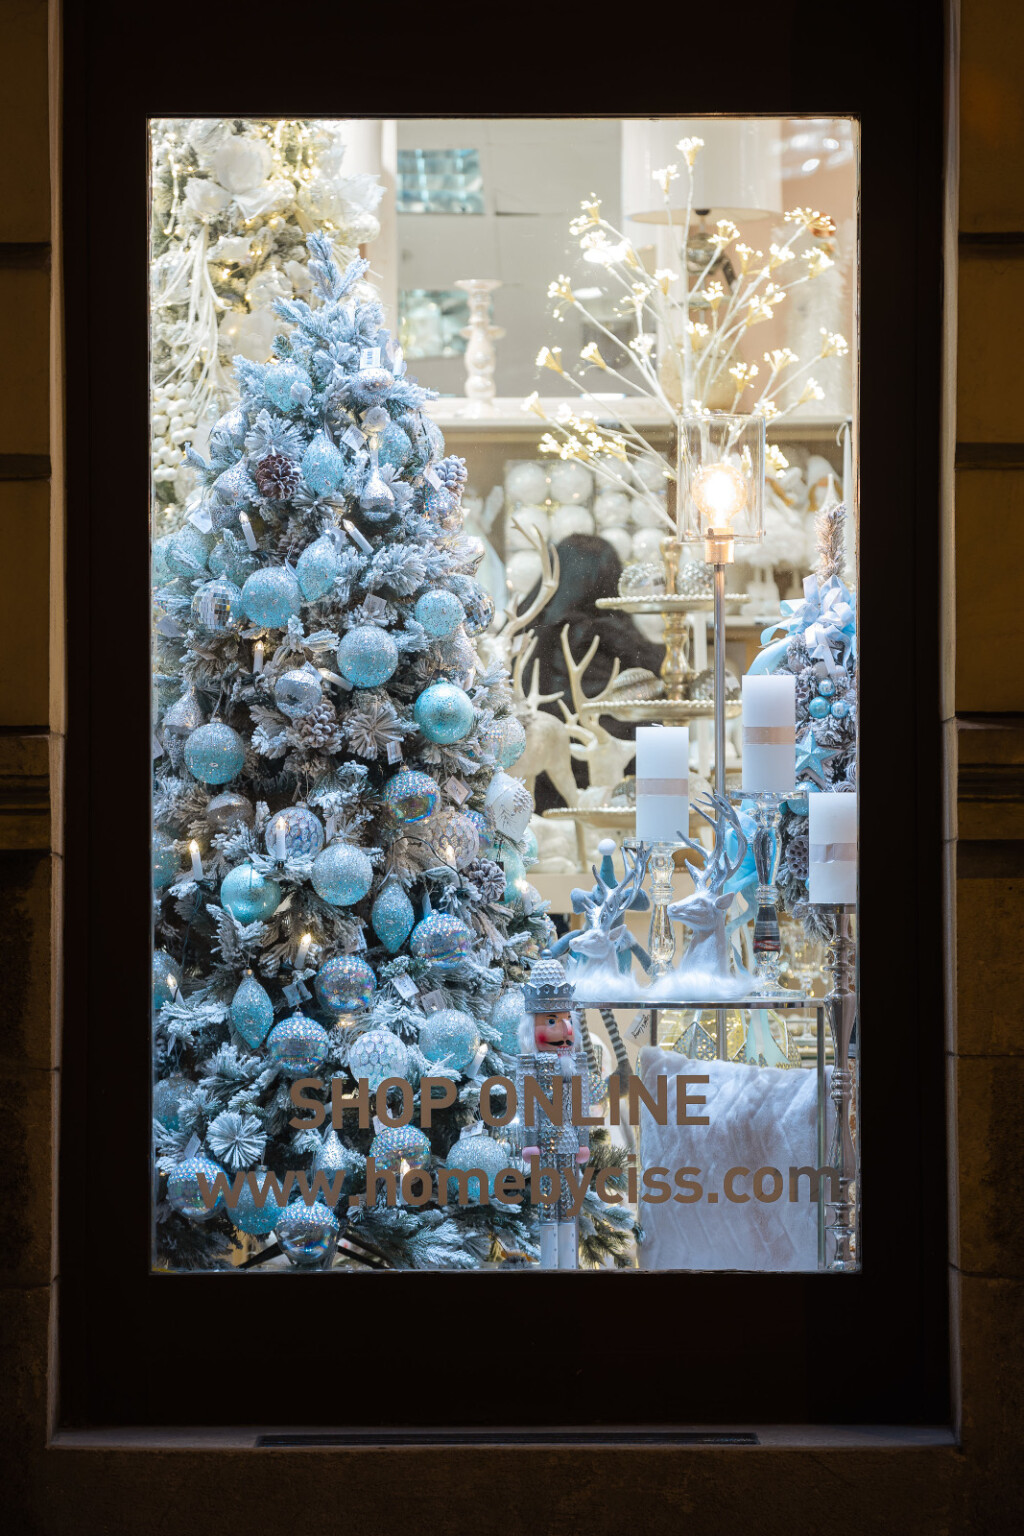 Božićno uređenje zagrebačkog gift shopa Home by Ciss - 6